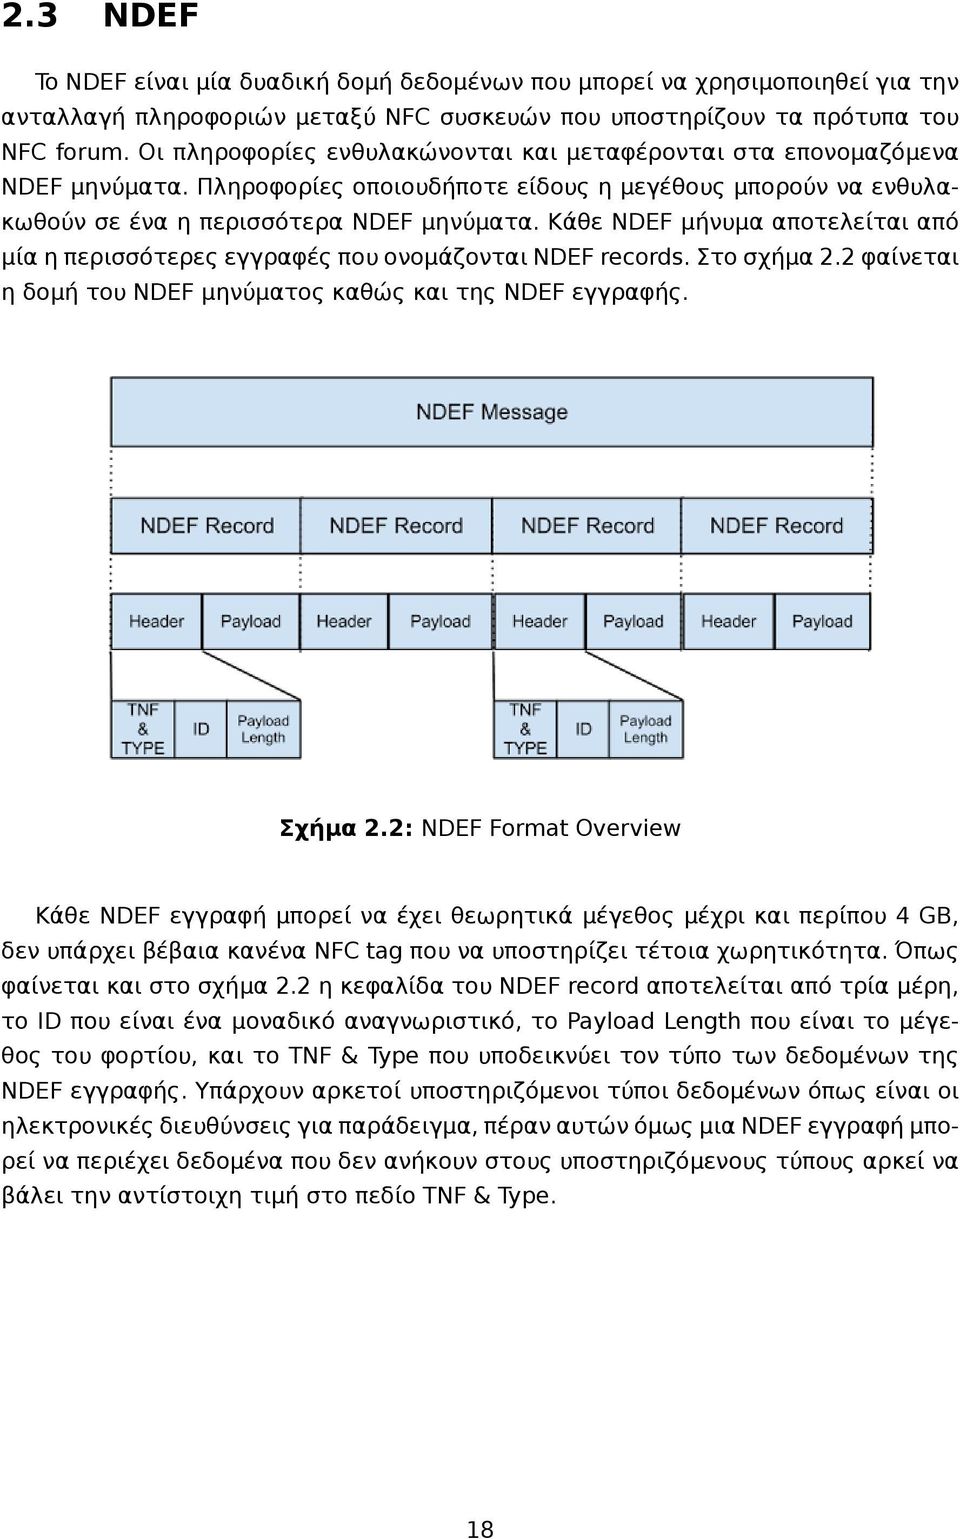 Κάθε NDEF μήνυμα αποτελείται από μία η περισσότερες εγγραφές που ονομάζονται NDEF records. Στο σχήμα 2.2 φαίνεται η δομή του NDEF μηνύματος καθώς και της NDEF εγγραφής. Σχήμα 2.